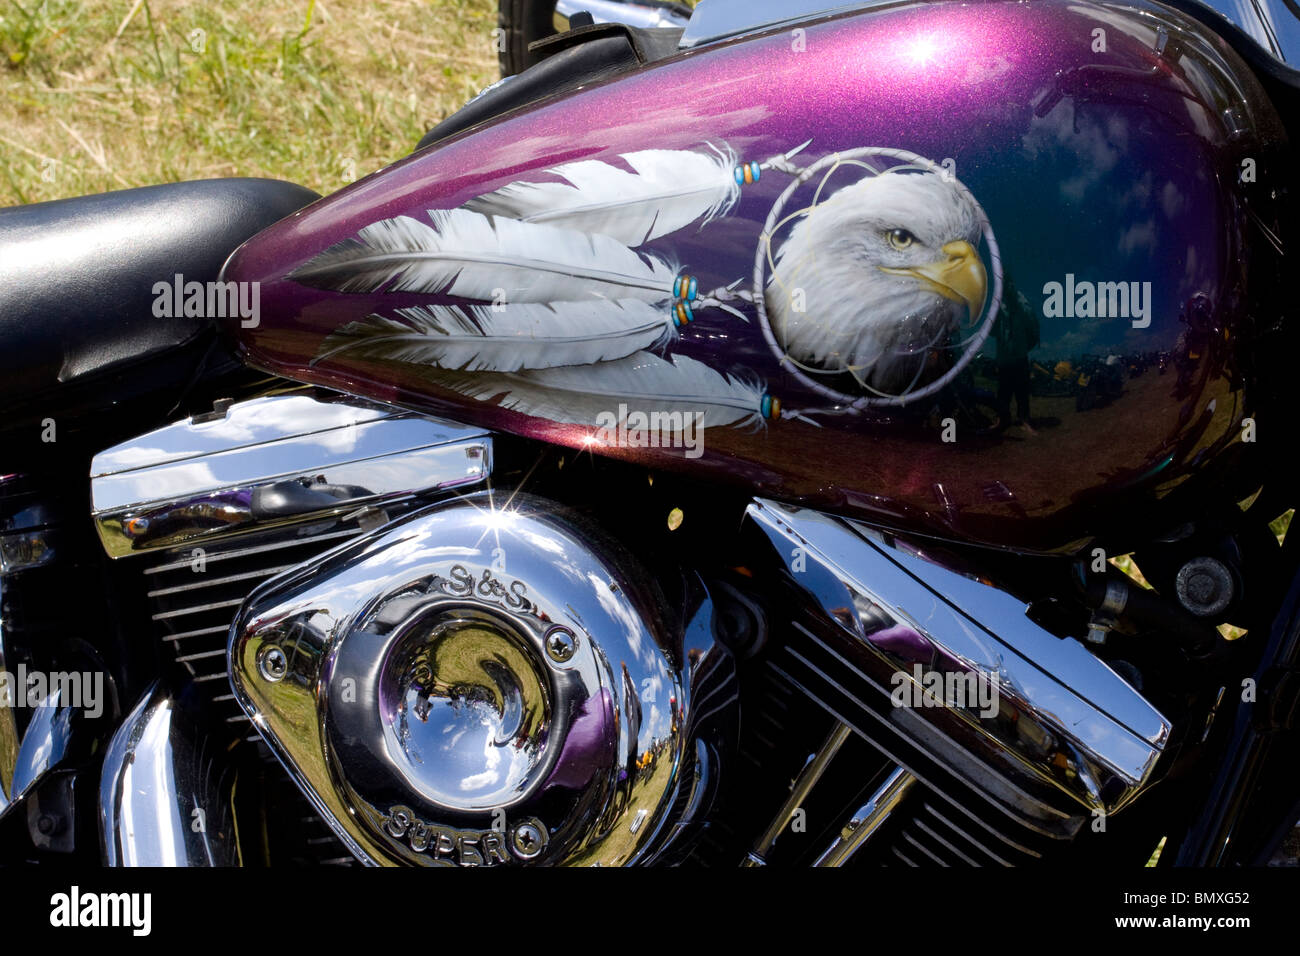 Réservoir de moto Harley Davidson Abstract View Banque D'Images